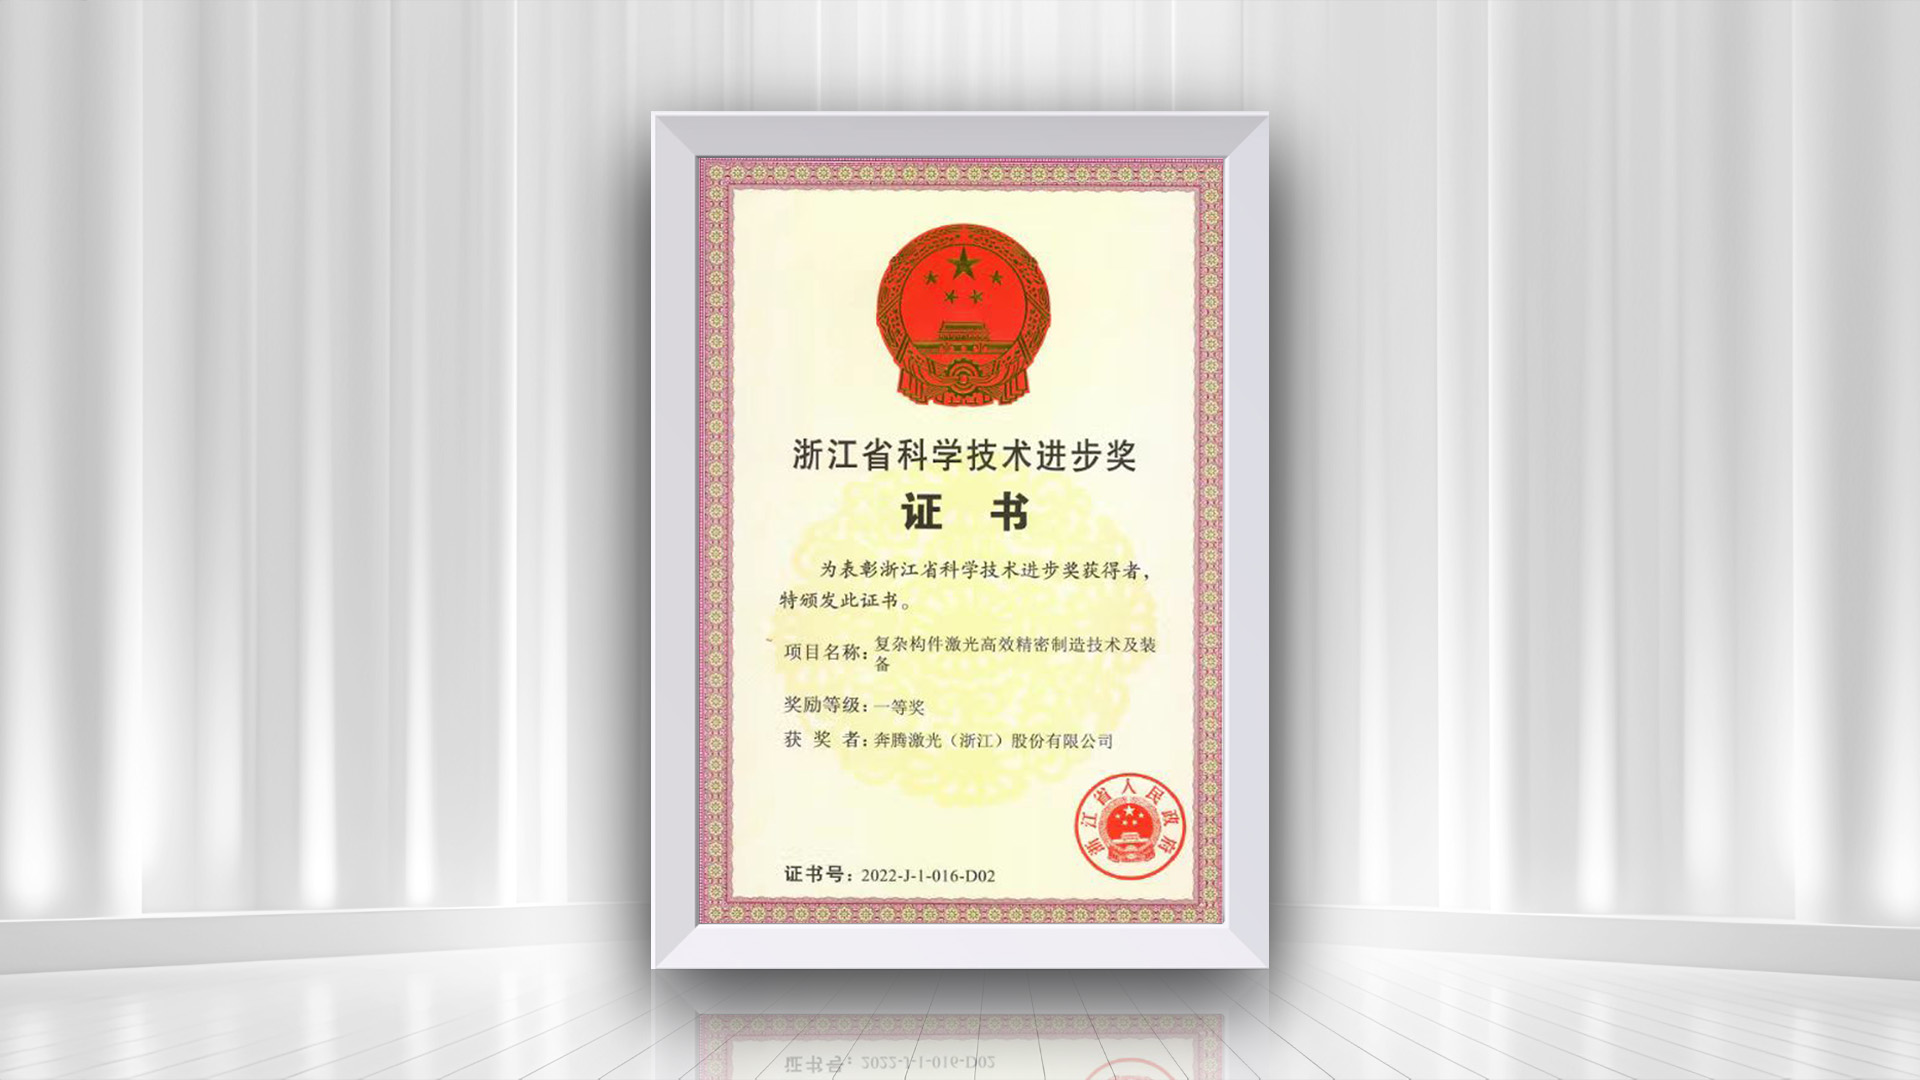 Поздравляем компанию Penta Laser с получением первой премии провинции Чжэцзян за достижения в области науки и технологий за проект «Эффективные прецизионные технологии и оборудование для сложного лазерного производства».